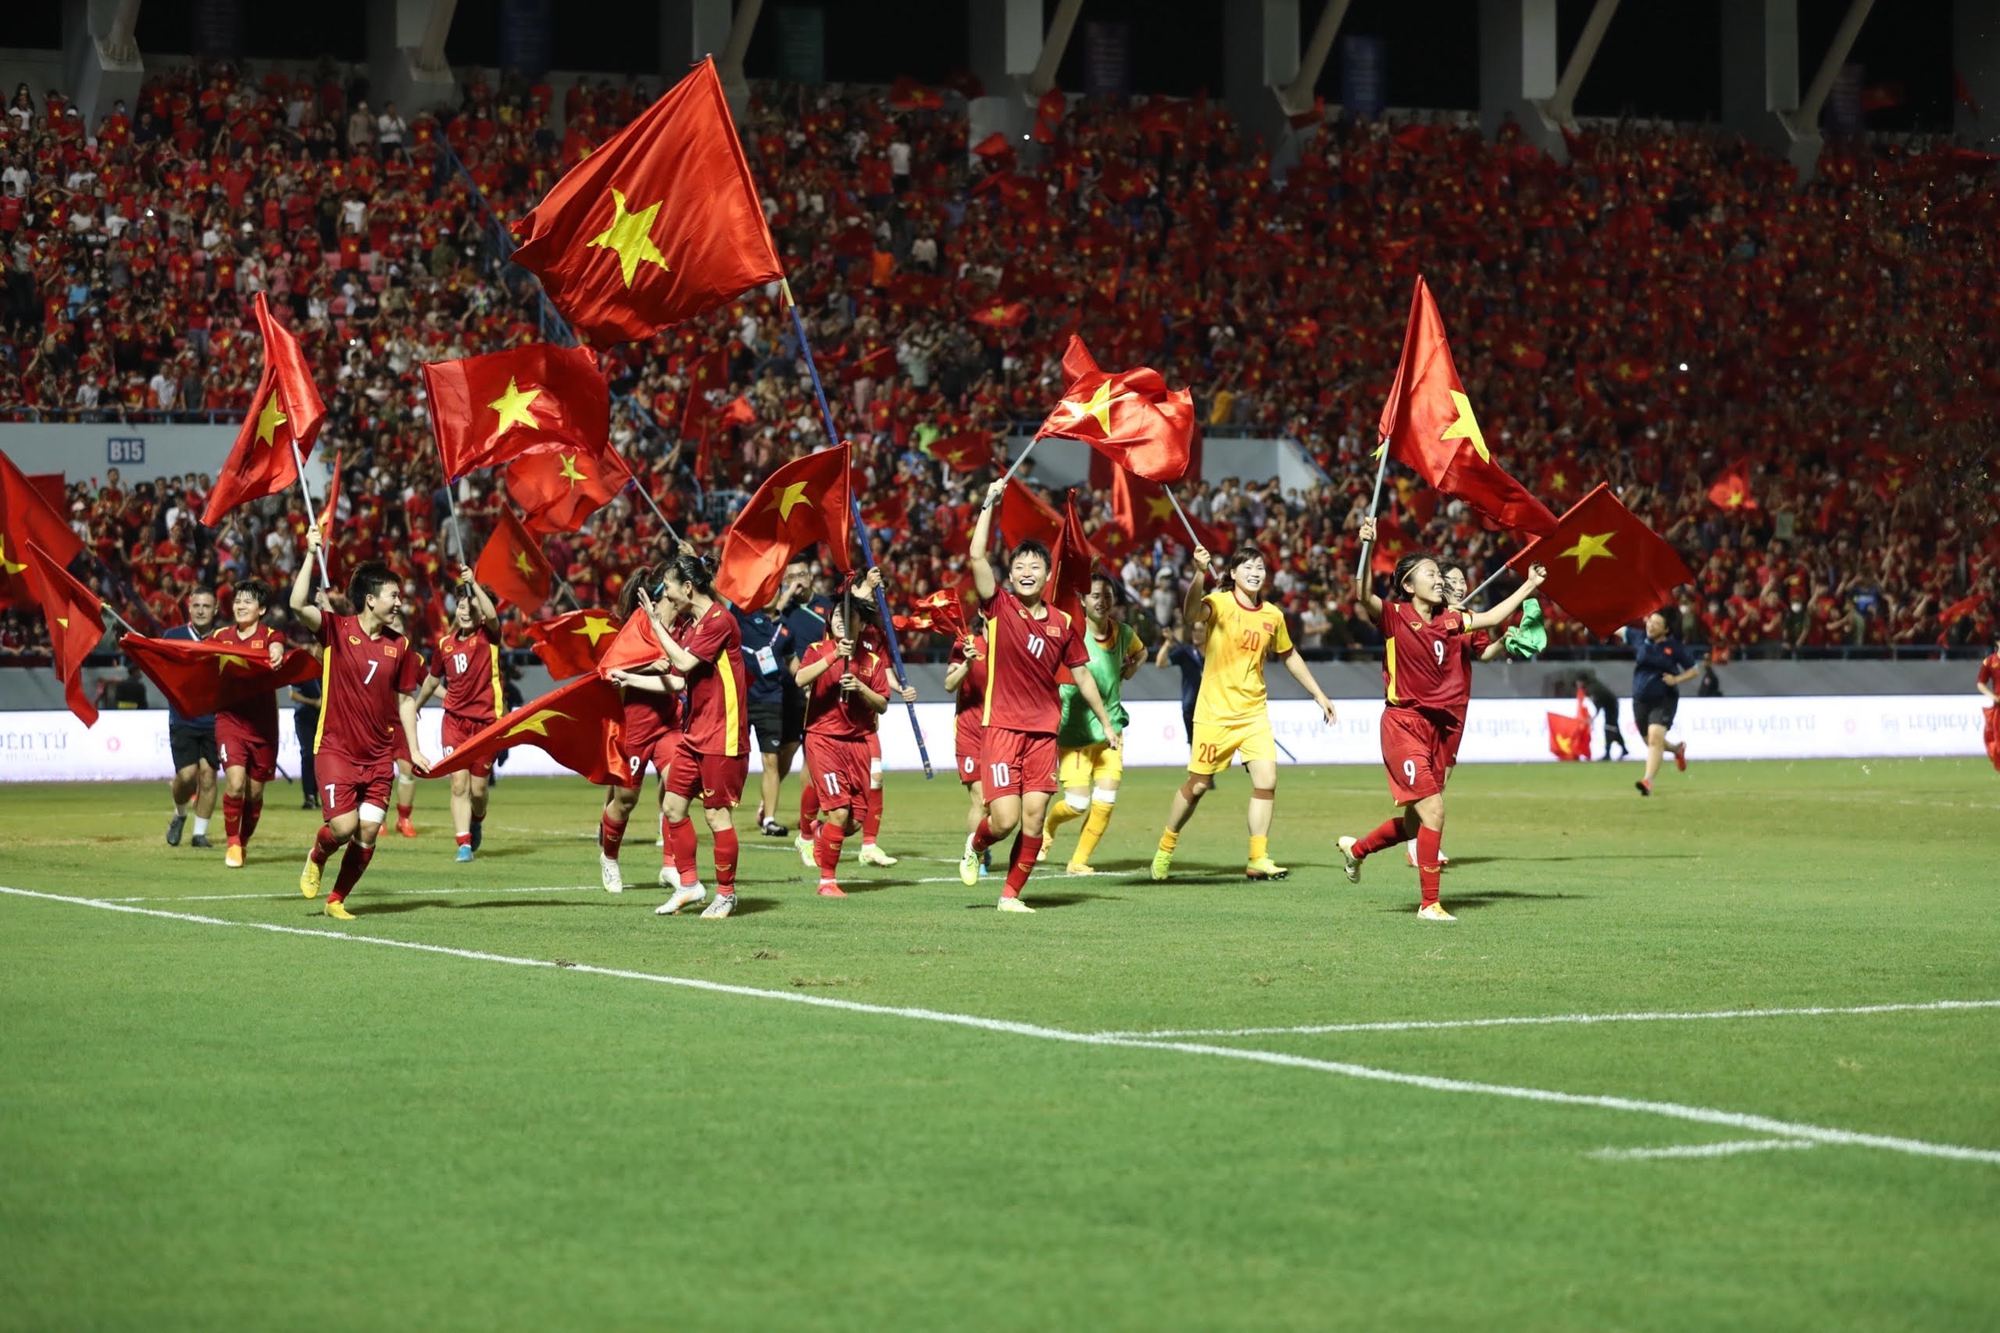 FE CREDIT thưởng nóng 3 tỷ đồng cho đội tuyển bóng đá nữ Việt Nam - Ảnh 1.